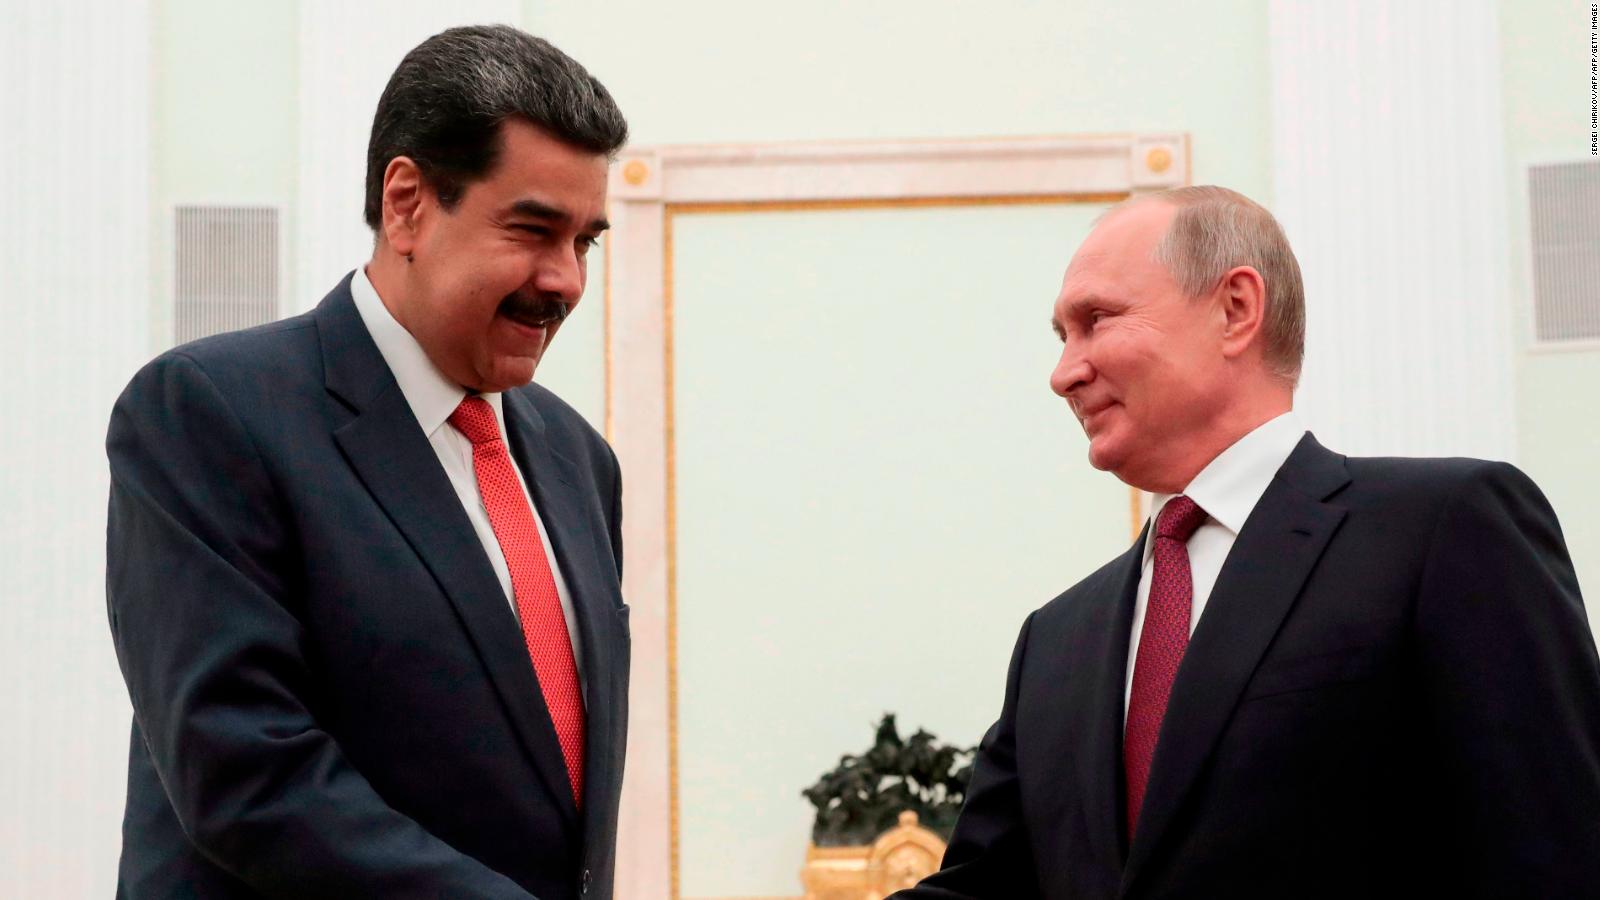 Nicolás Maduro visita a Vladimir Putin: esto fue lo que sucedió en su encuentro | Video | CNN